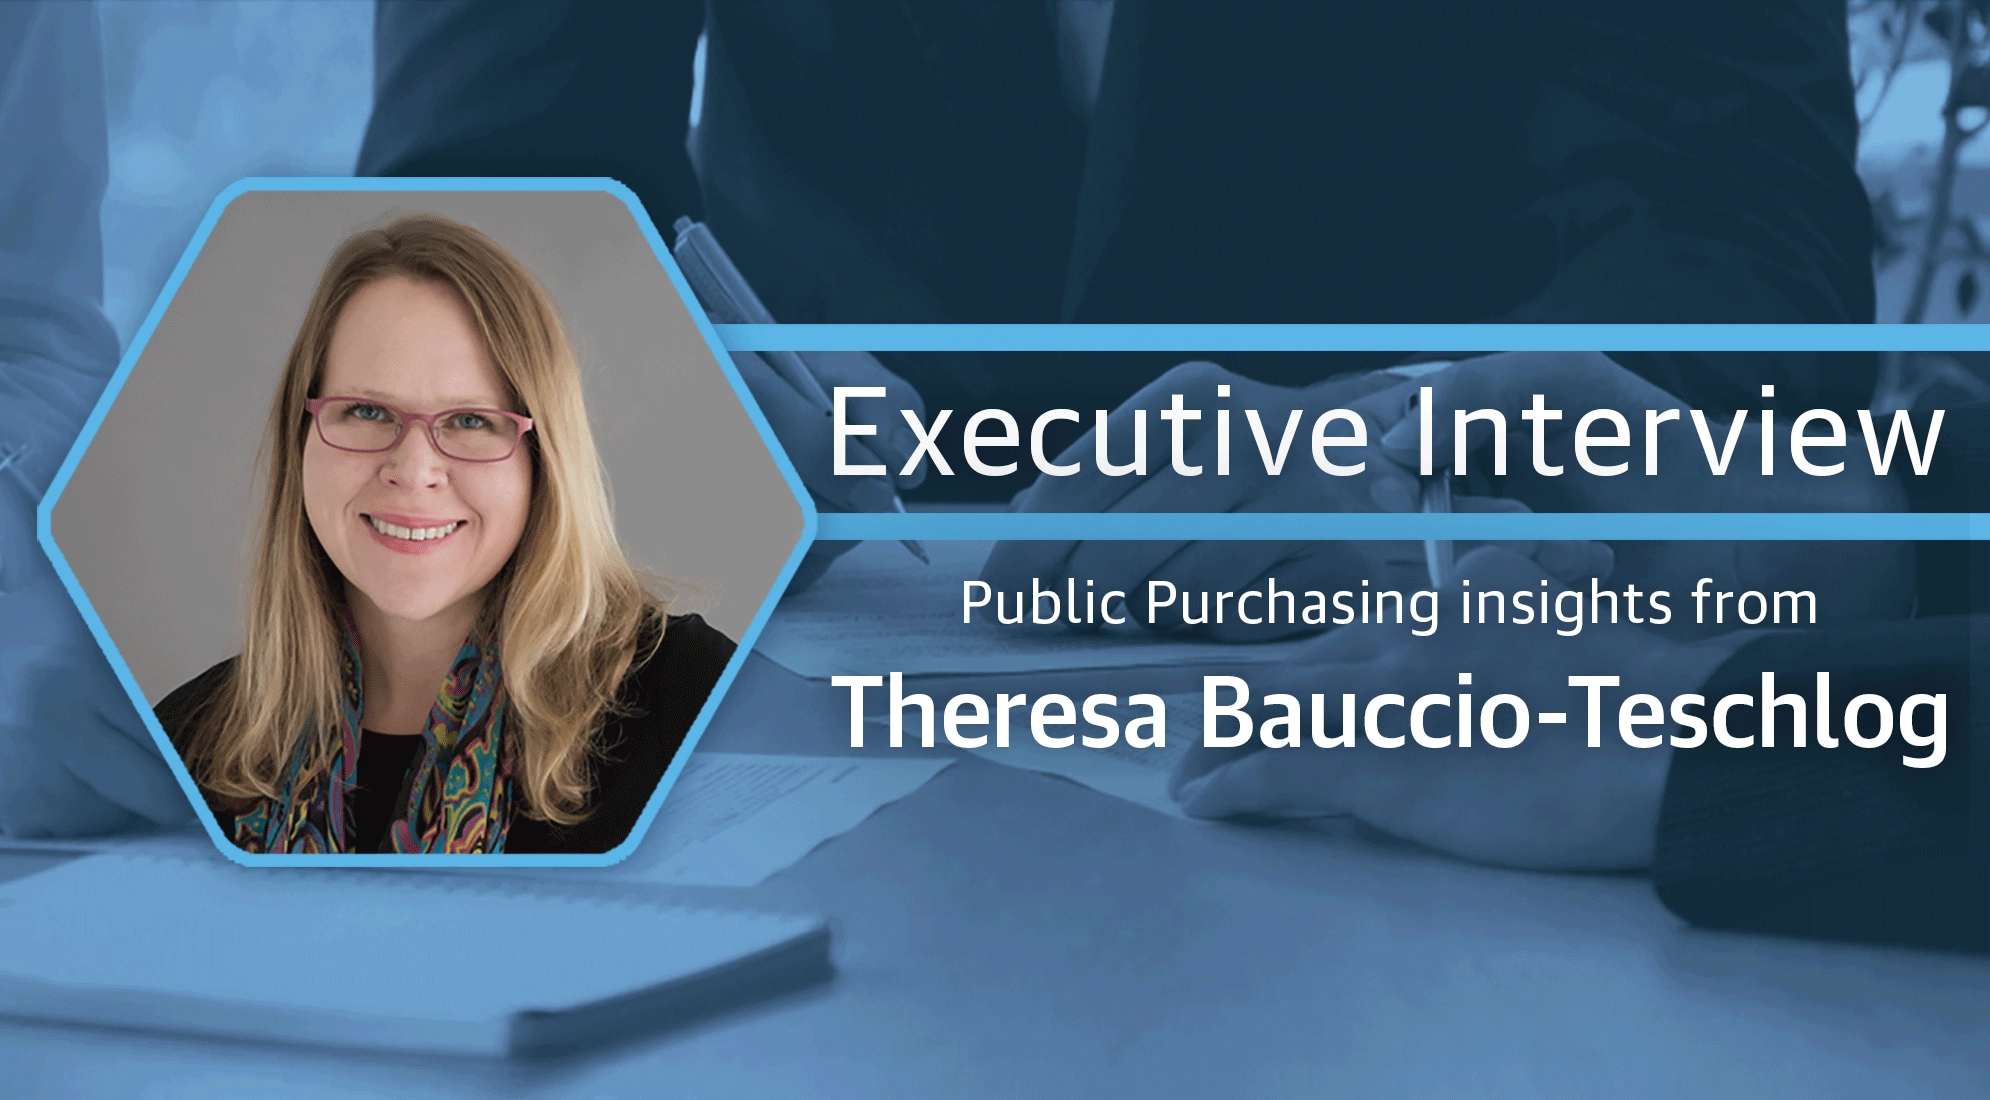 Executive Interview with Theresa Bauccio Teschlog